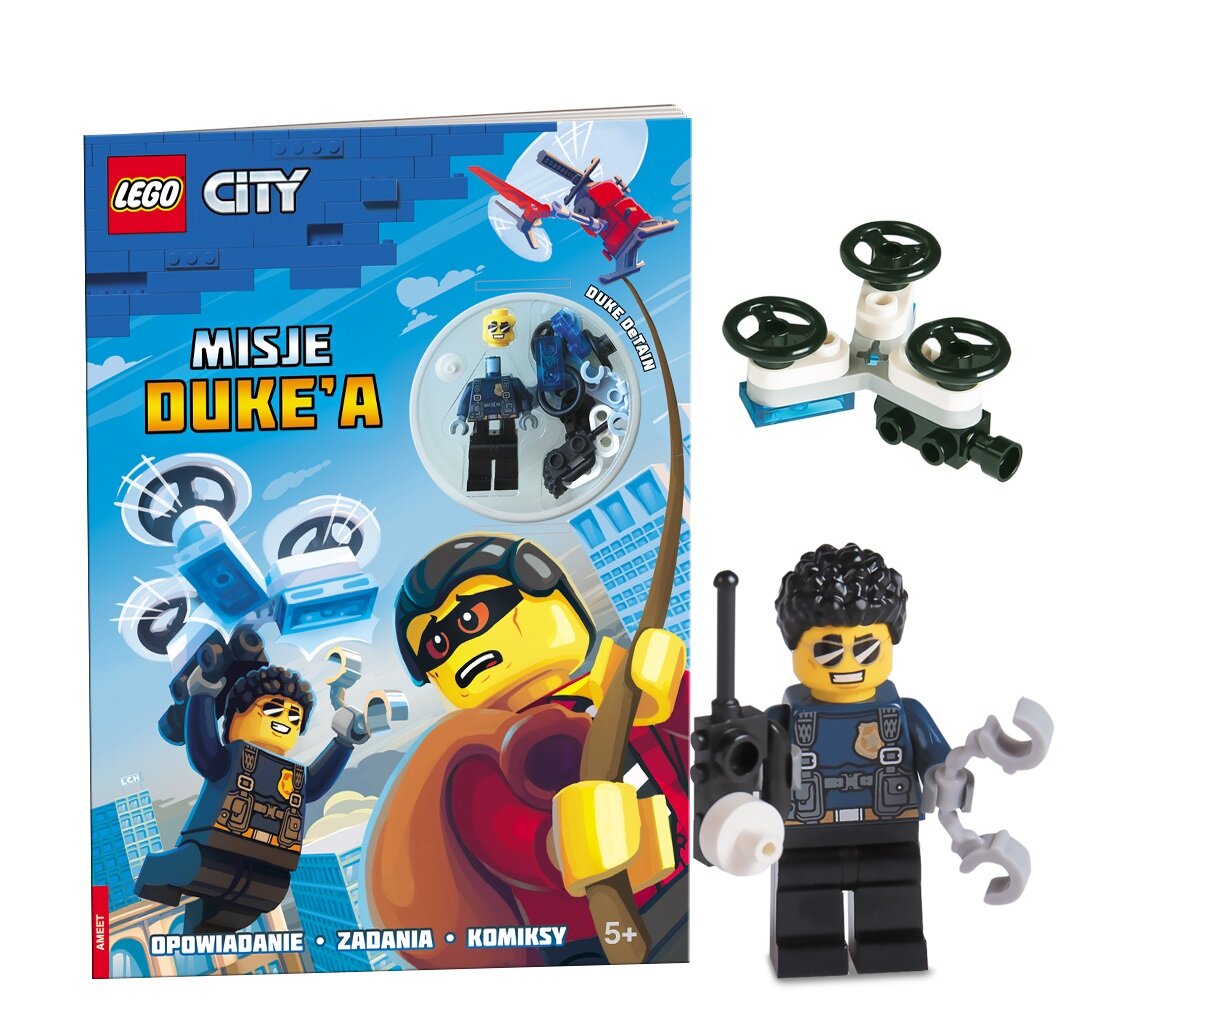 LEGO City Misje Duke A LNC-6020 Książka - niskie ceny i opinie w Media  Expert